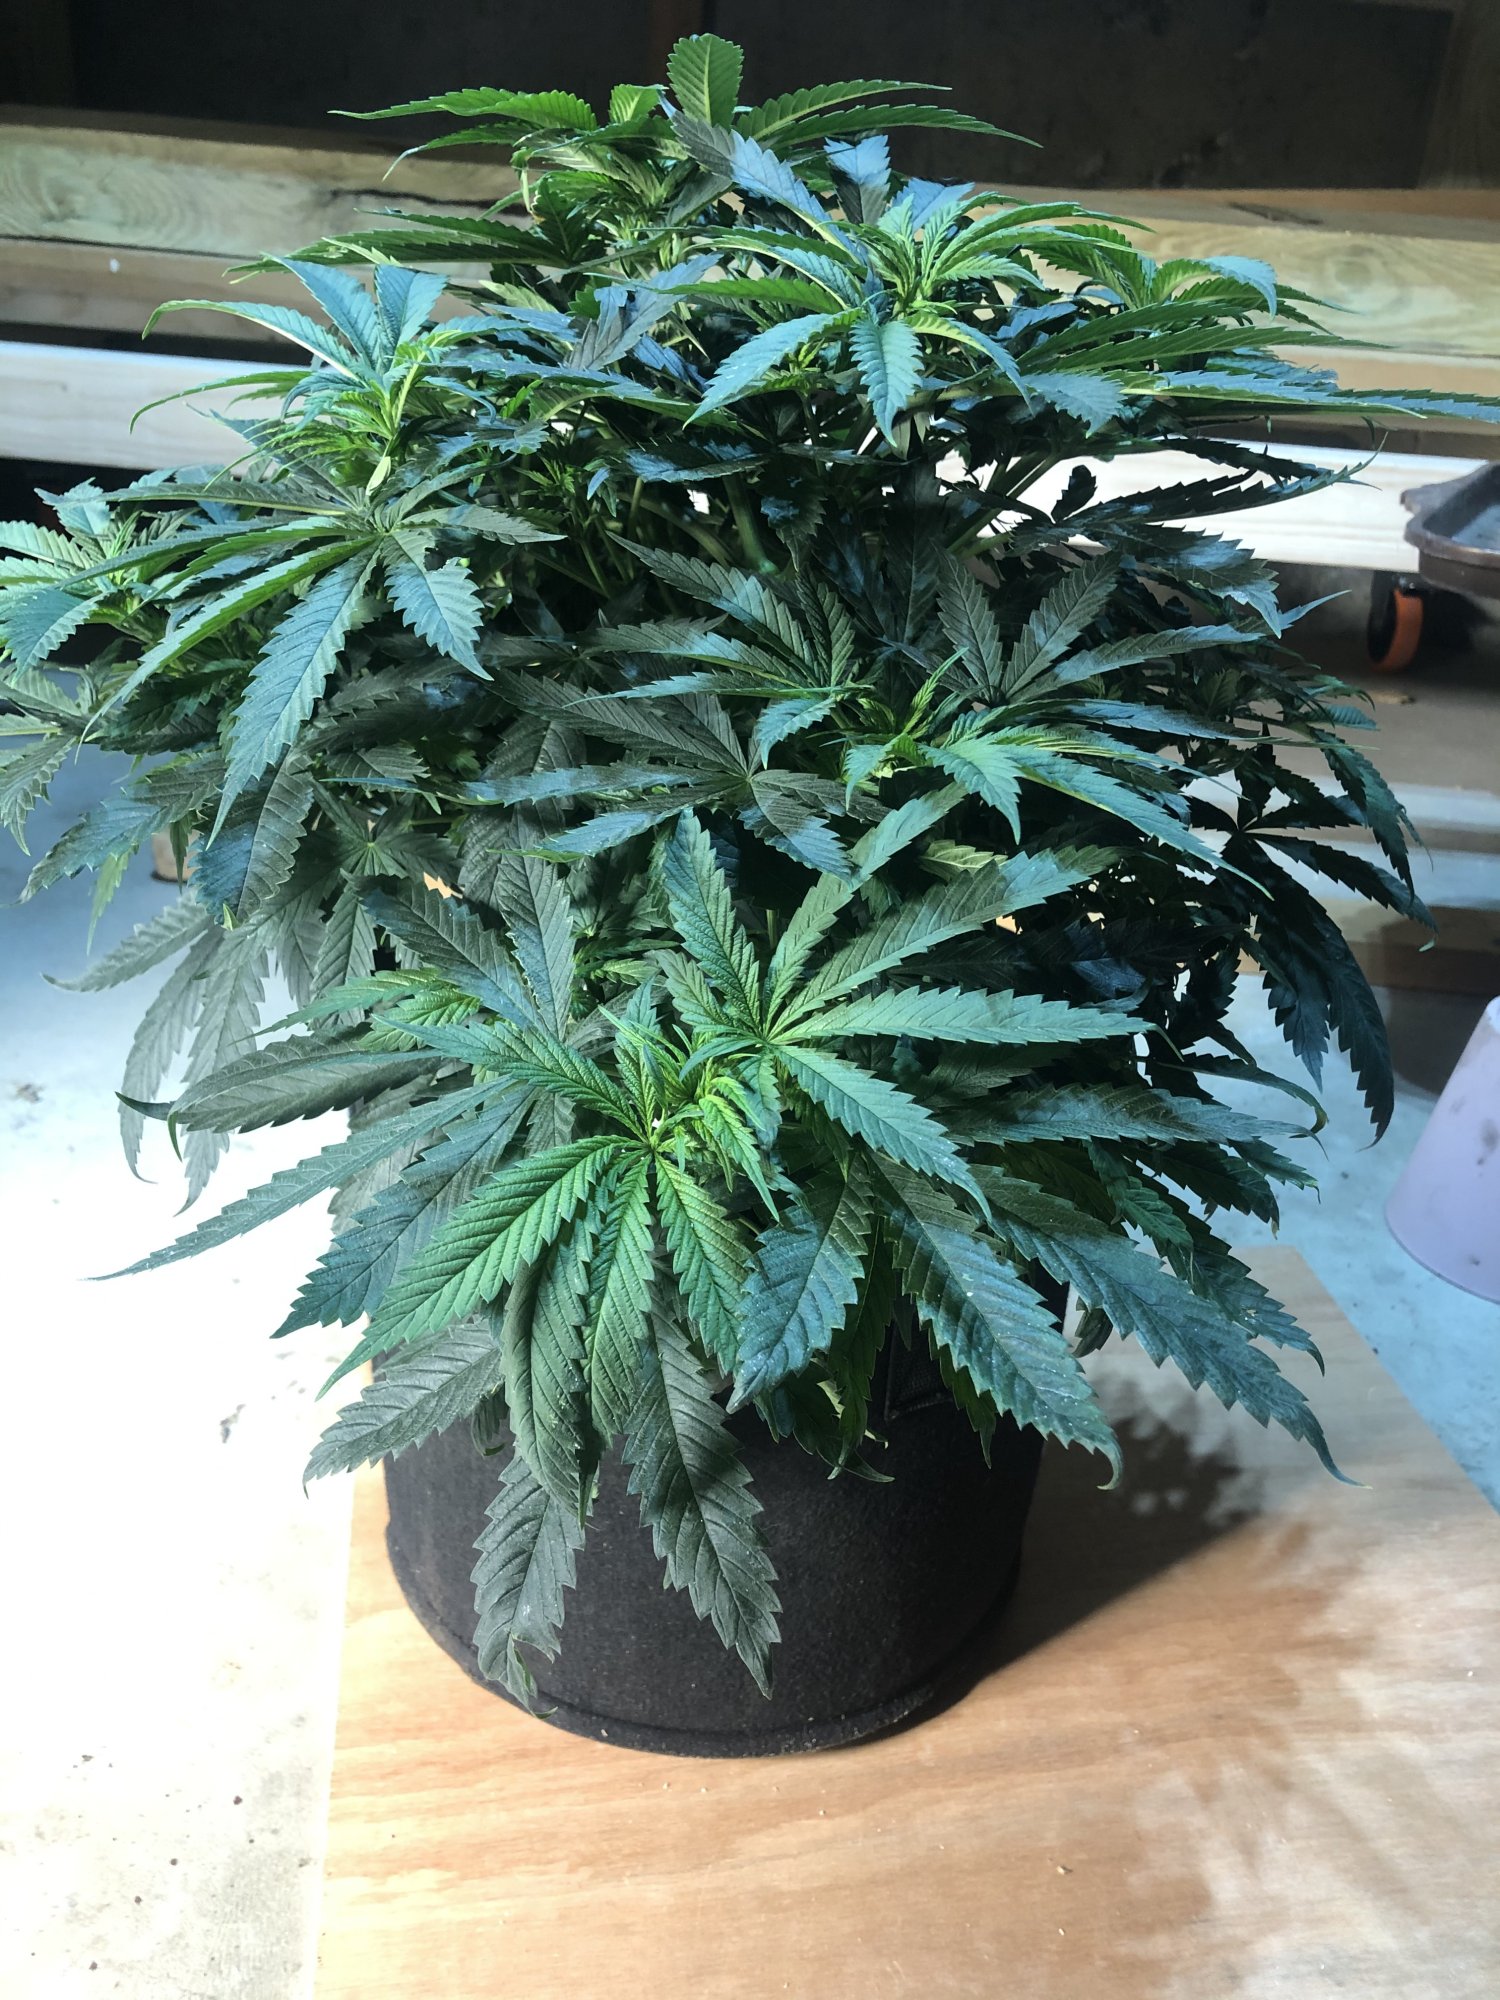 Is my first indoor grow look ok so far 2